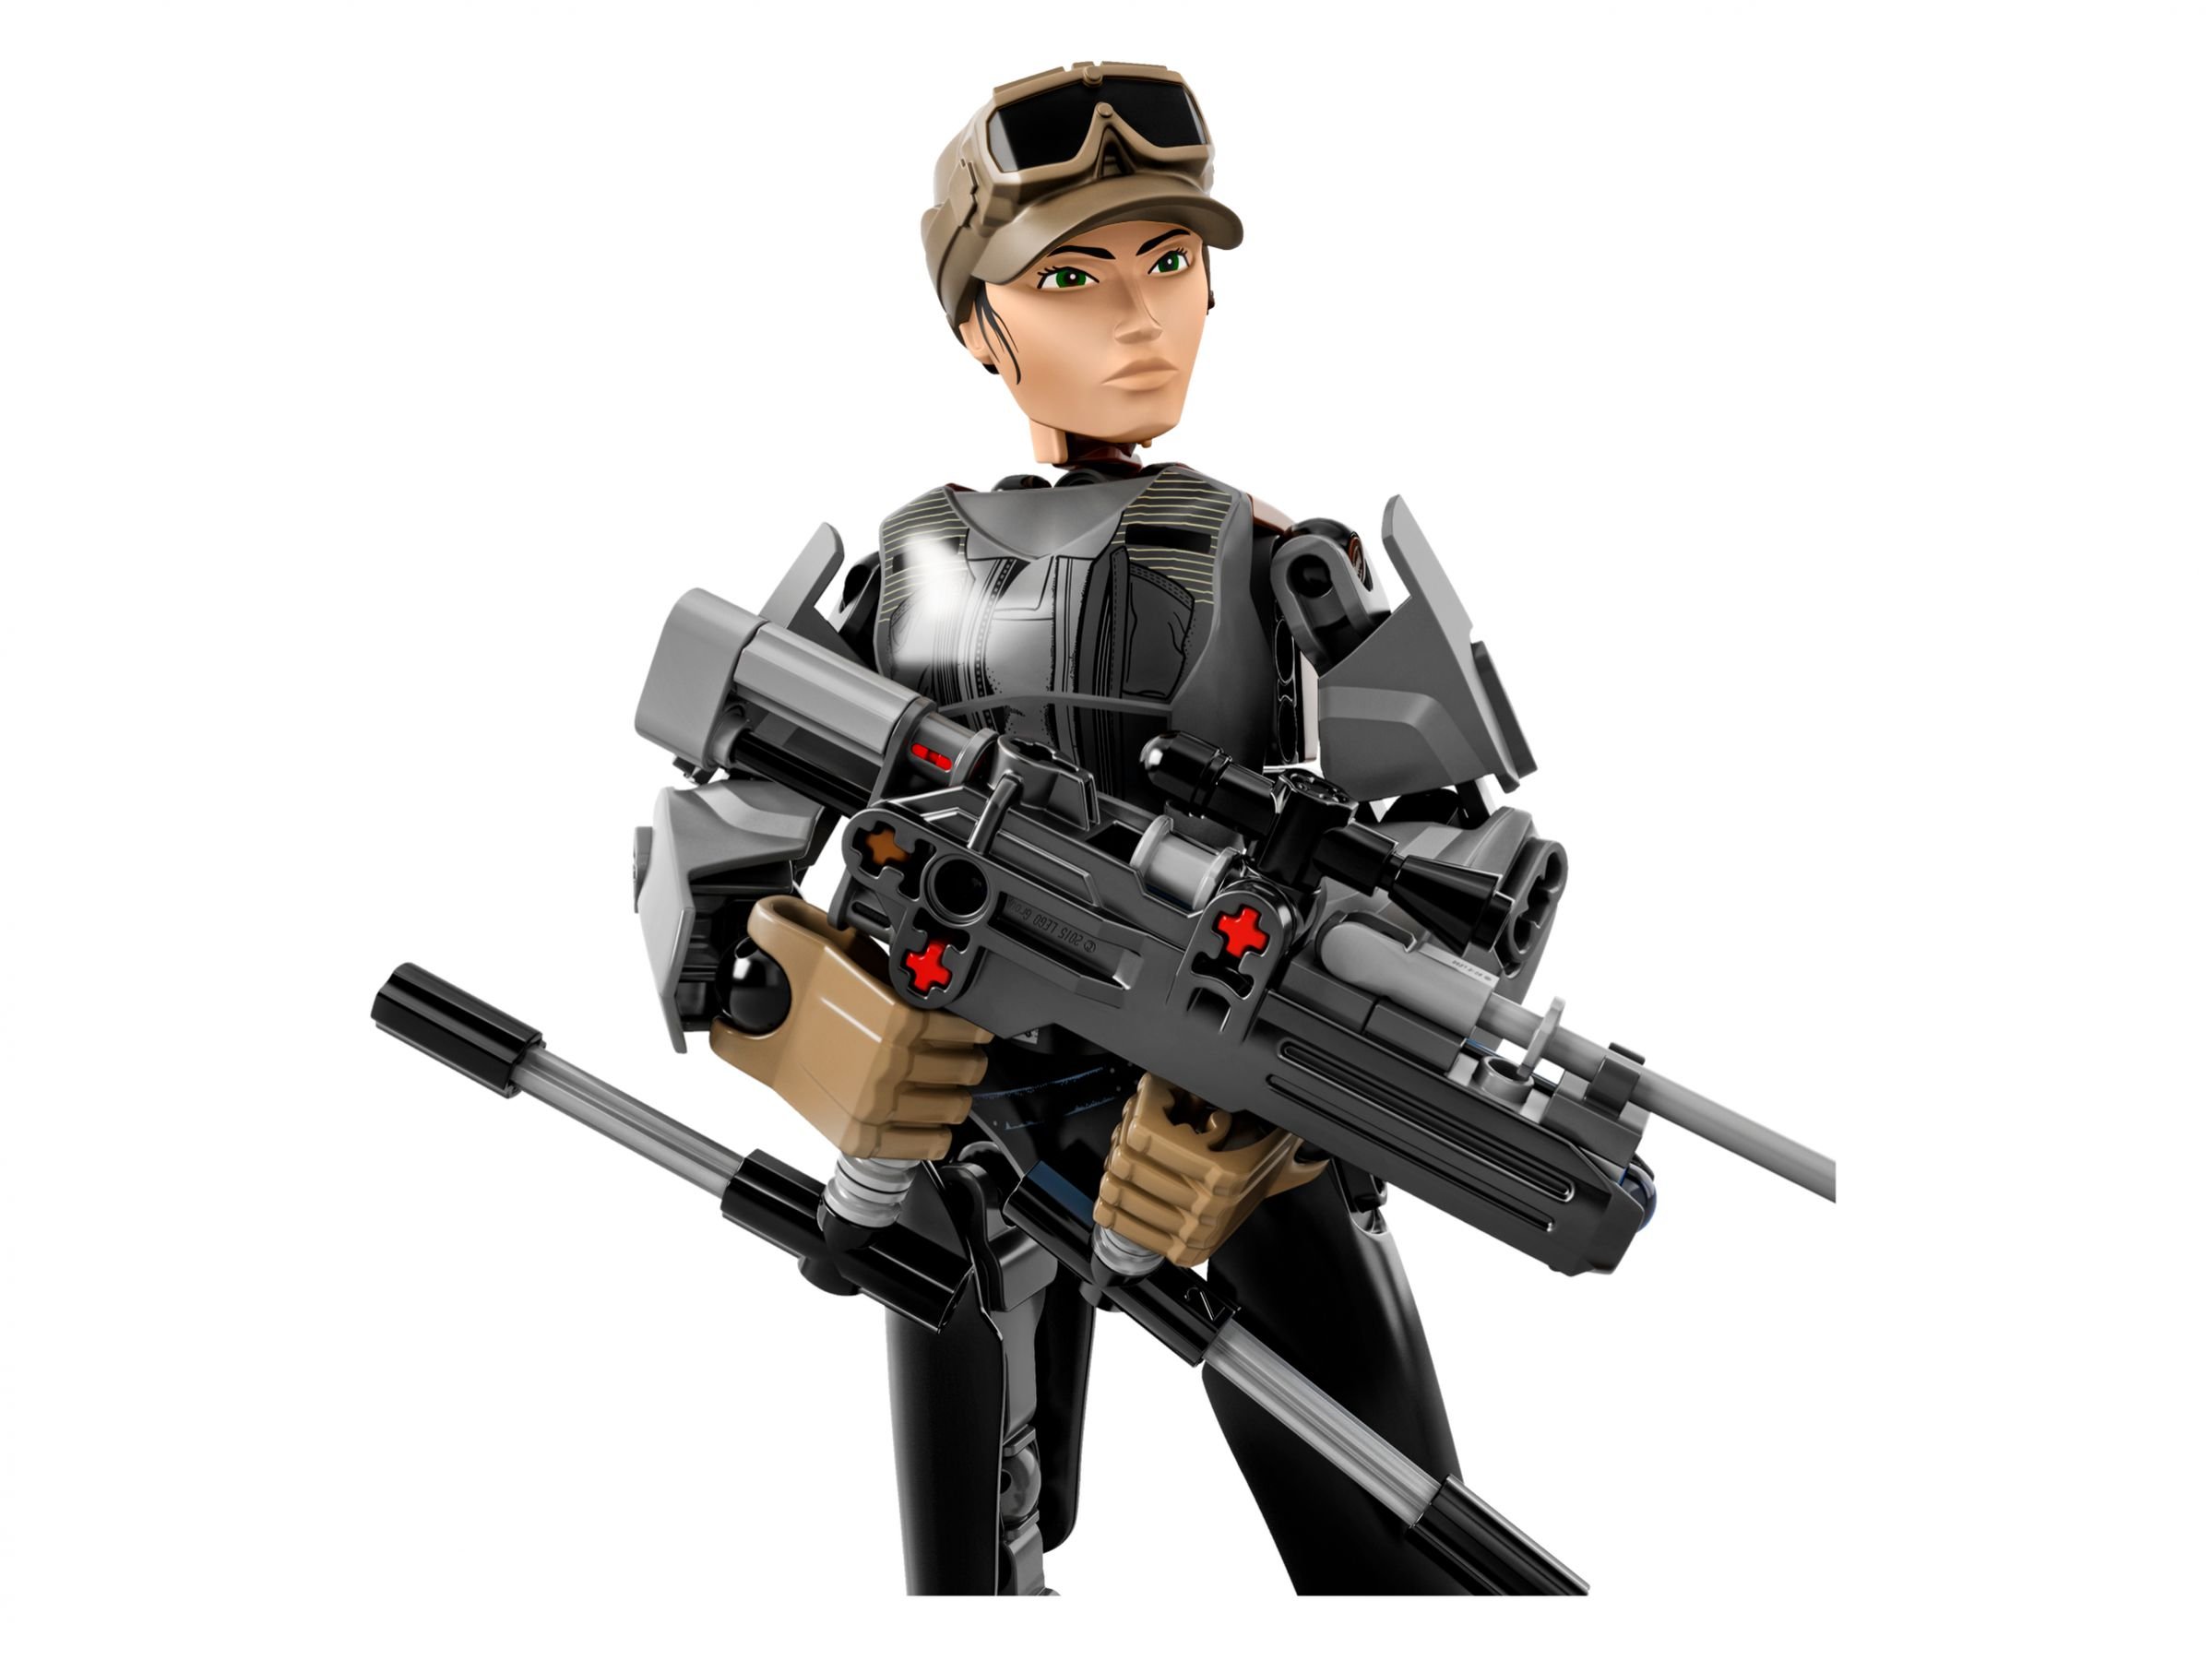 LEGO Star Wars Buildable Figures 75119 Sergeant Jyn Erso™ LEGO_75119_alt3.jpg